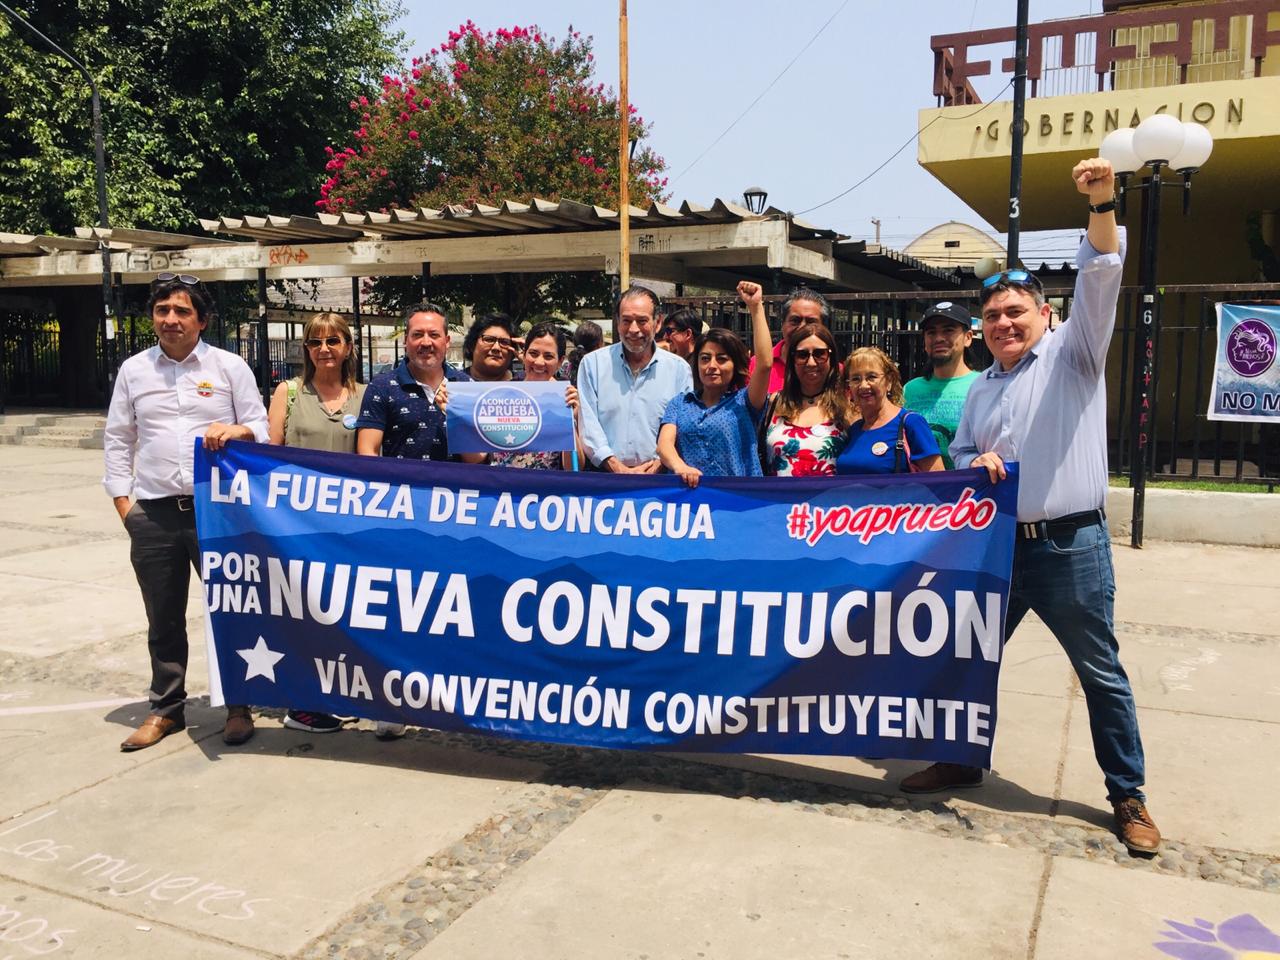 ACONCAGUA: Organizaciones sociales, autoridades y ciudadanos lanzaron la campaña “Aconcagua Aprueba una Nueva Constitución”